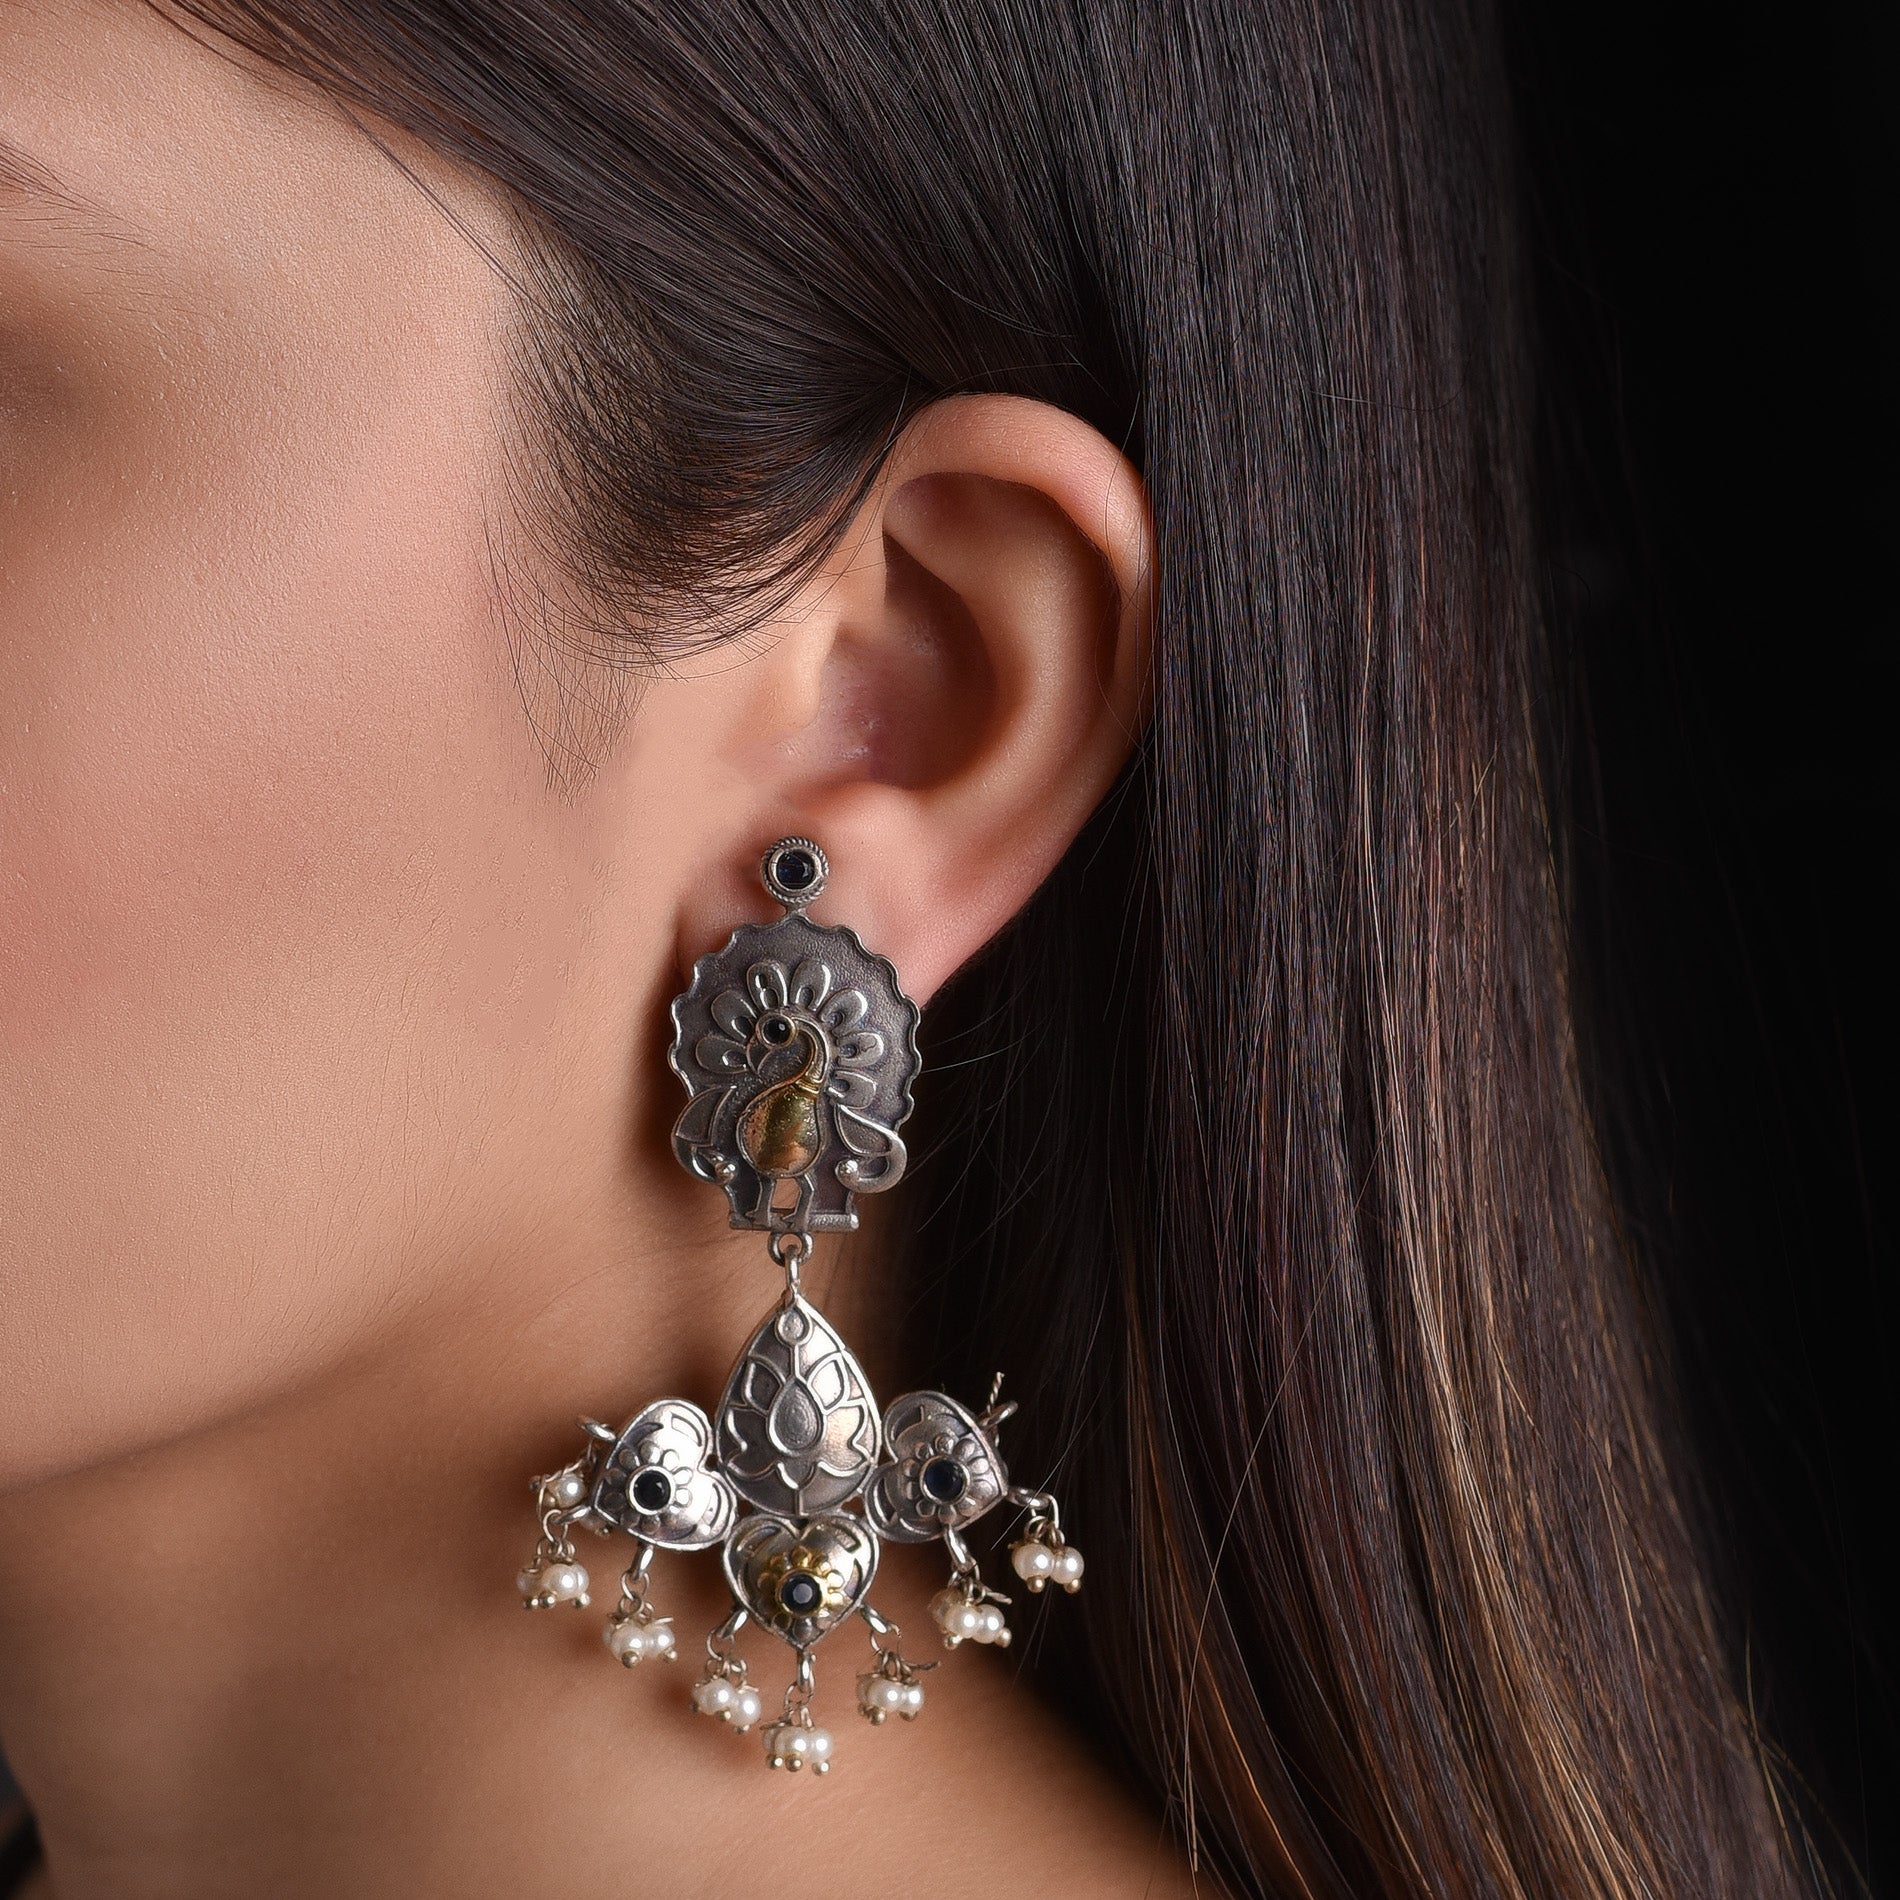 German Silver Earrings With Clear Stones /antique Silver Finish Earrings  /oxidized Earrings/indian Earrings - Etsy